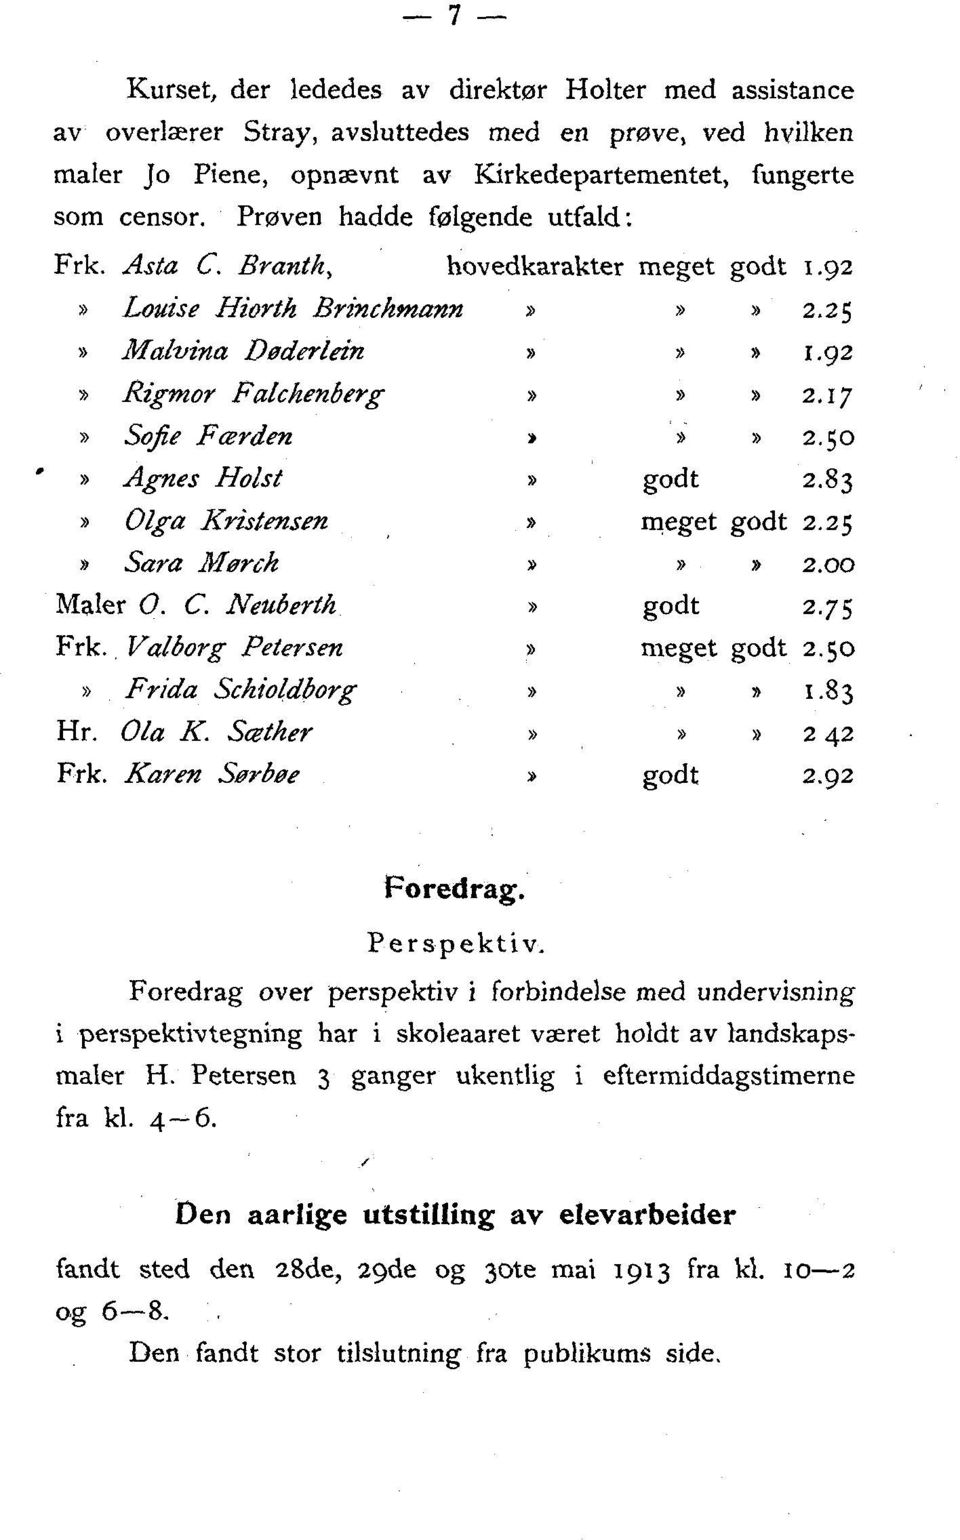 Agnes Holst» godt2.83» Olgra Kristensen» meget godt 2.25»Sara Mørch»»» 2.00 Maler 0. C. Neuberth» godt2.75 Frk., Valborg Petersen» meget godt 2.50»Frida Schioldborg»»» 1.83 Hr. Ola K.